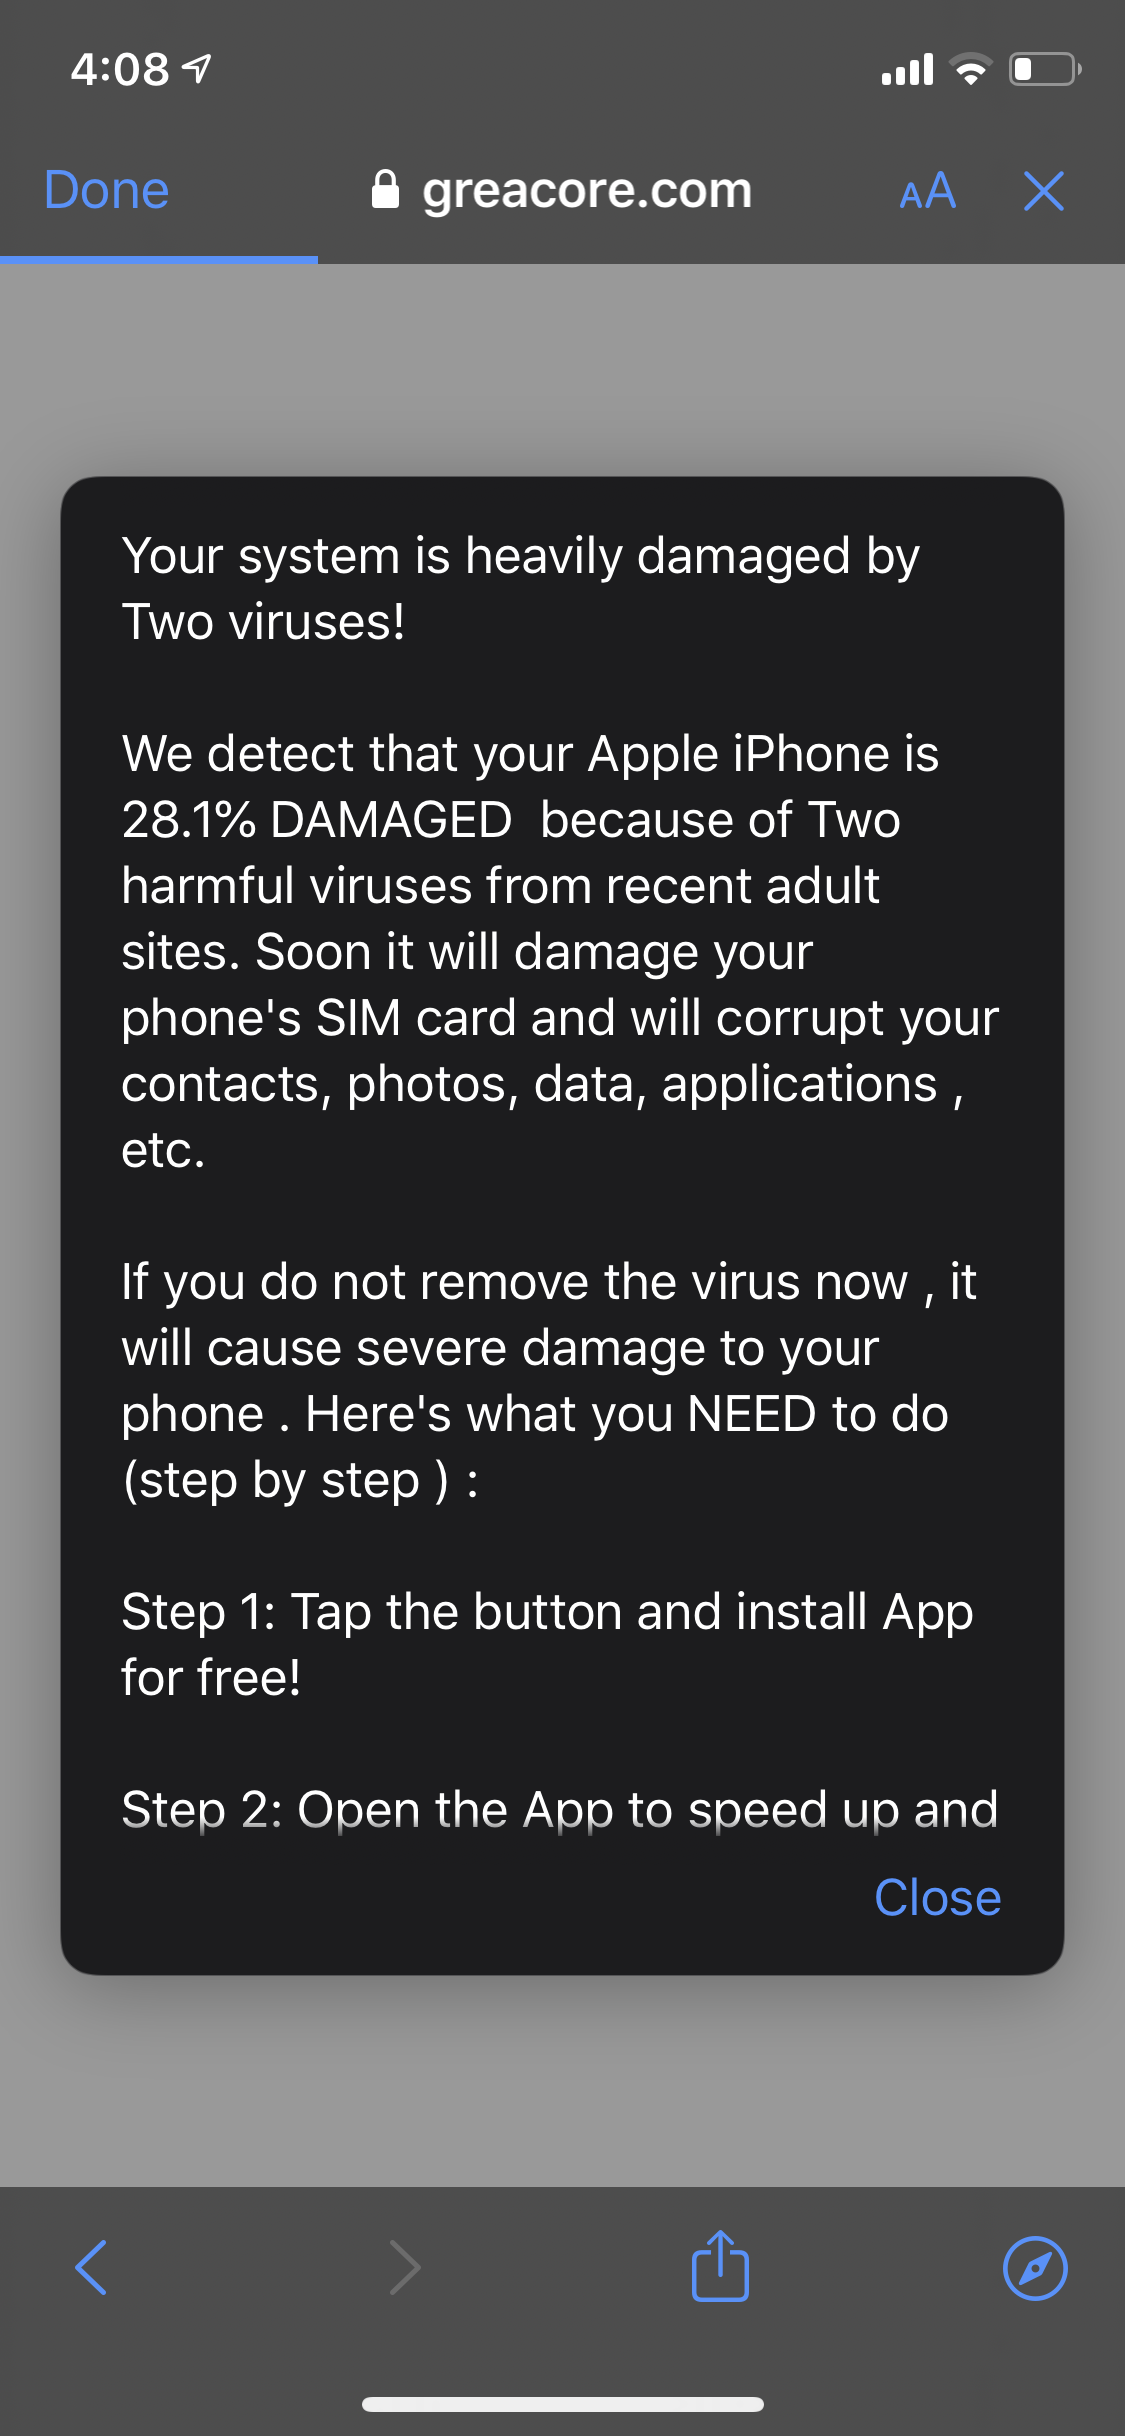 Je varování viru v mém telefonu skutečné?